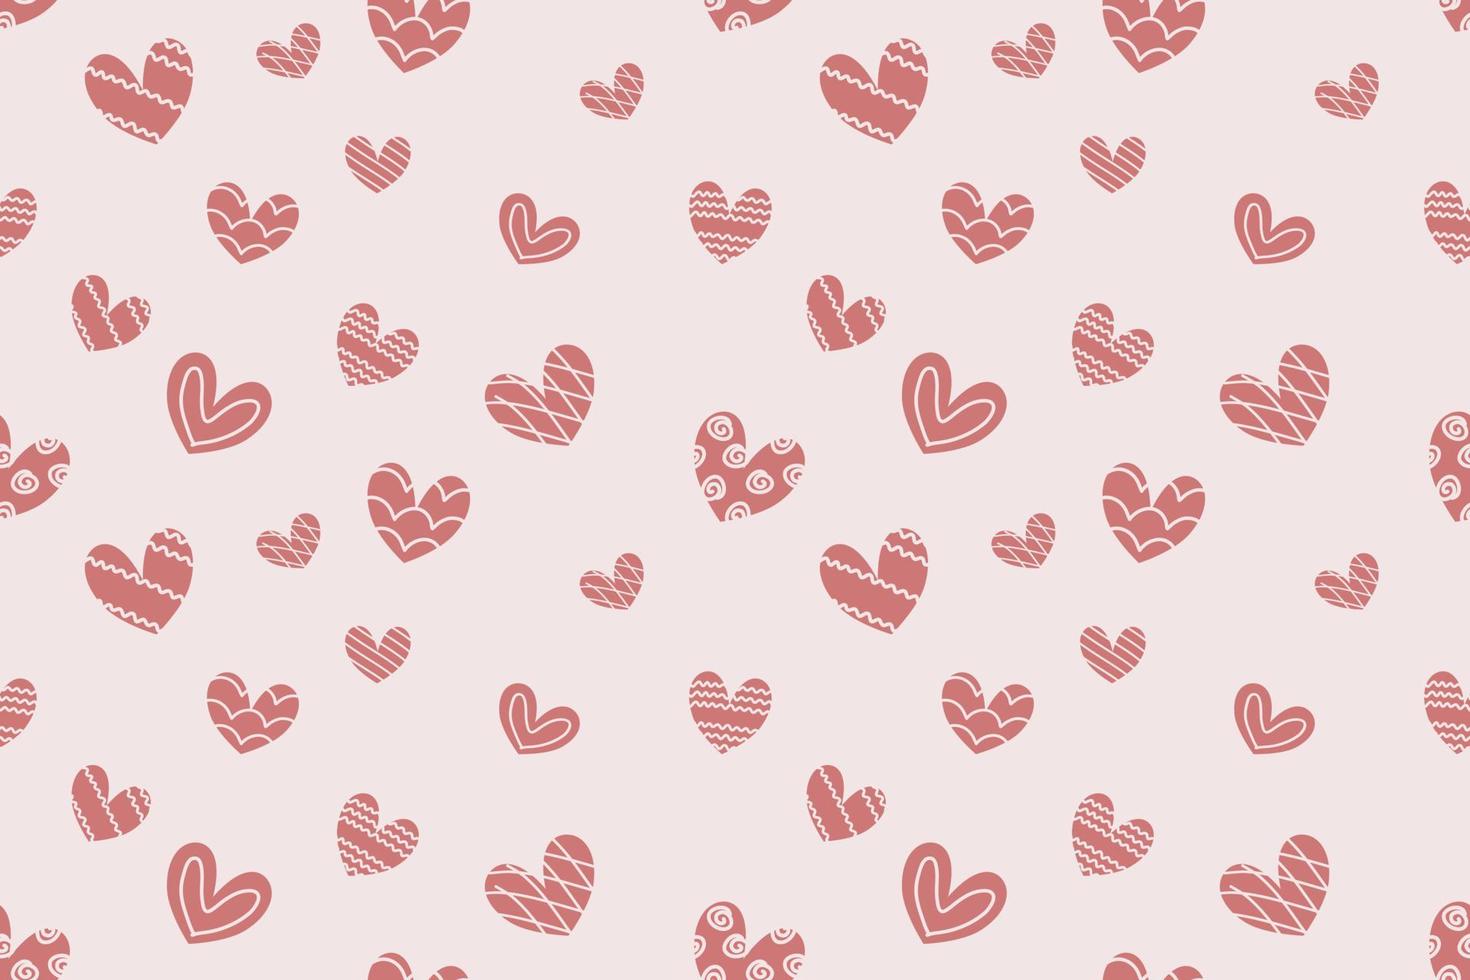 schattig pastel kleur hart patroon liefde thema ontwerp voor achtergrond behang kleding stof Valentijn dag bruiloft ceremonie verjaardag ambacht backdrop geschenk inpakken vector